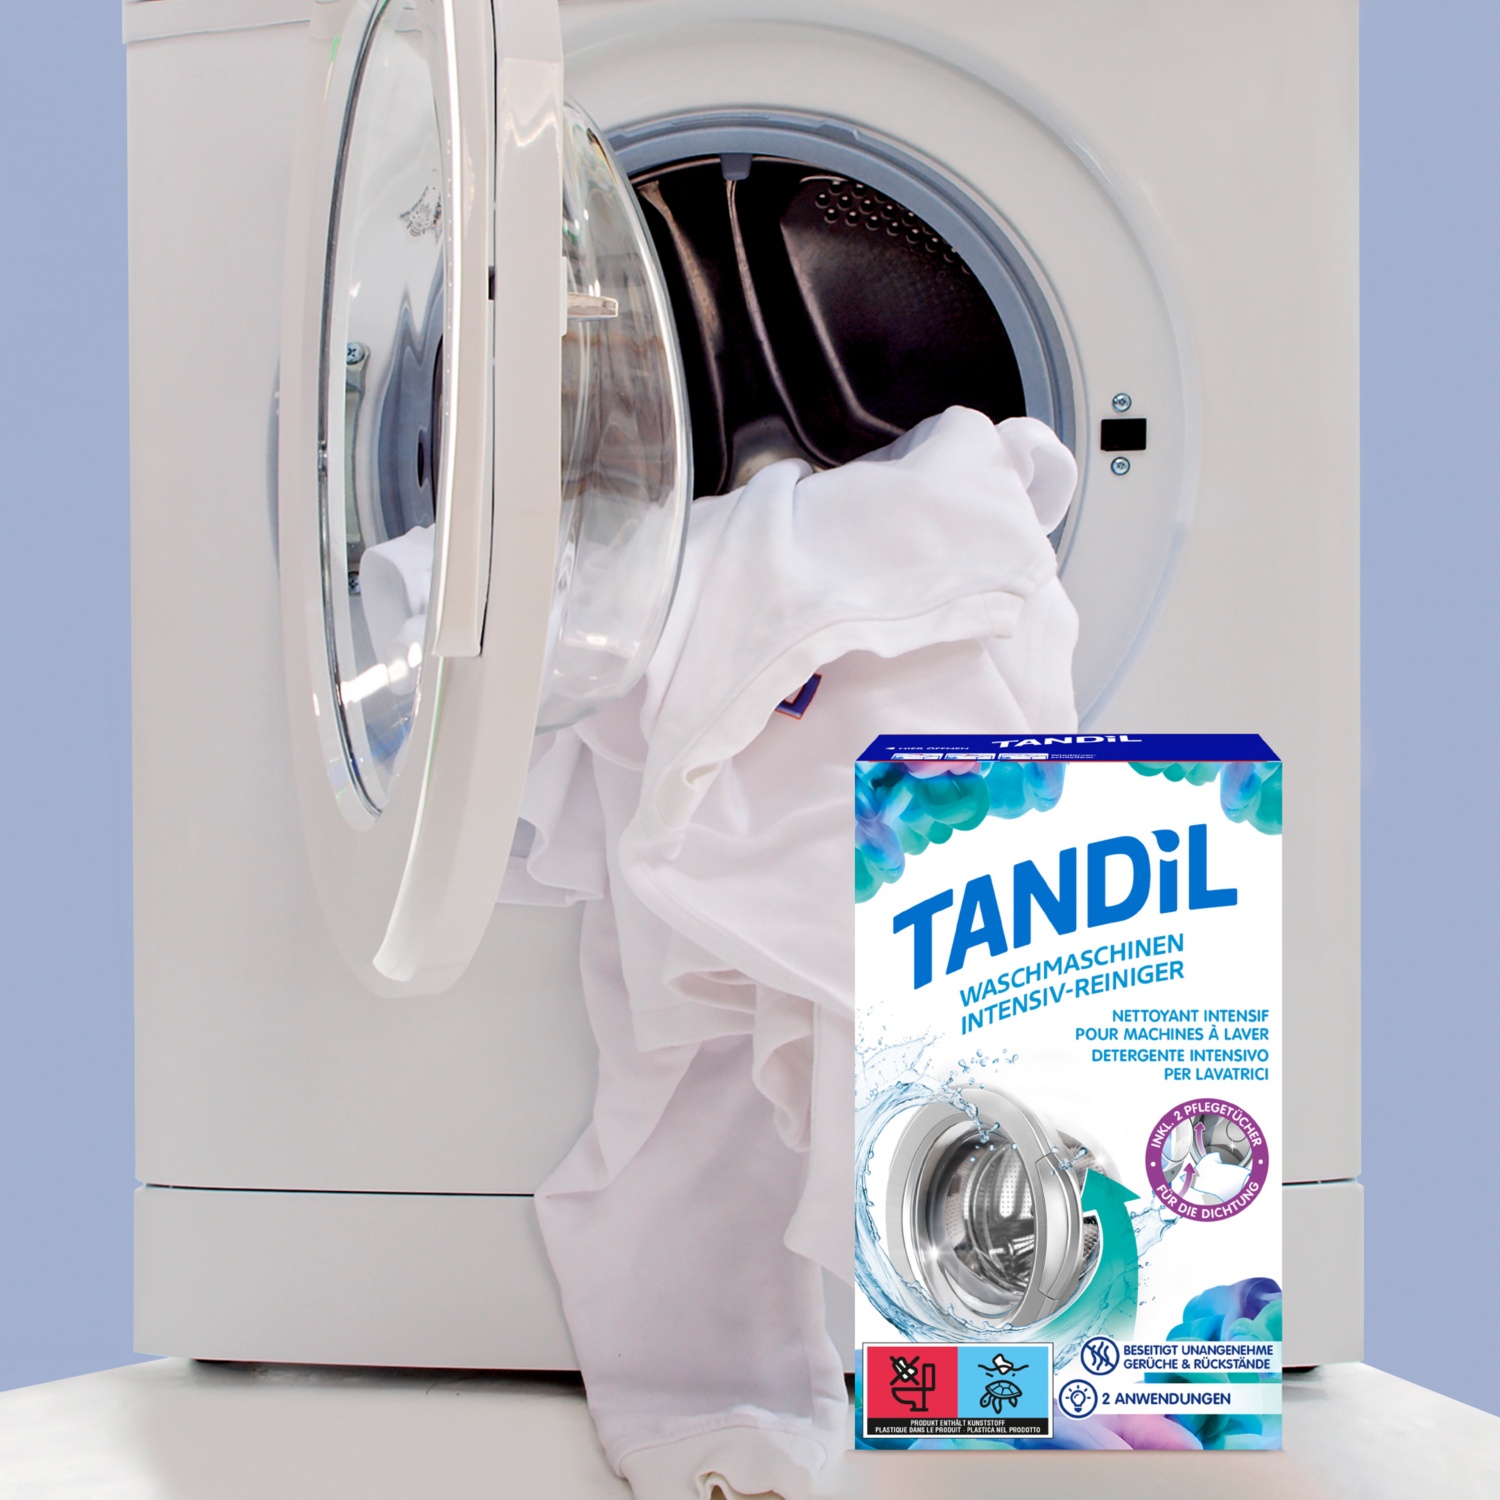 TANDIL Waschmaschinen Intensiv-Reiniger